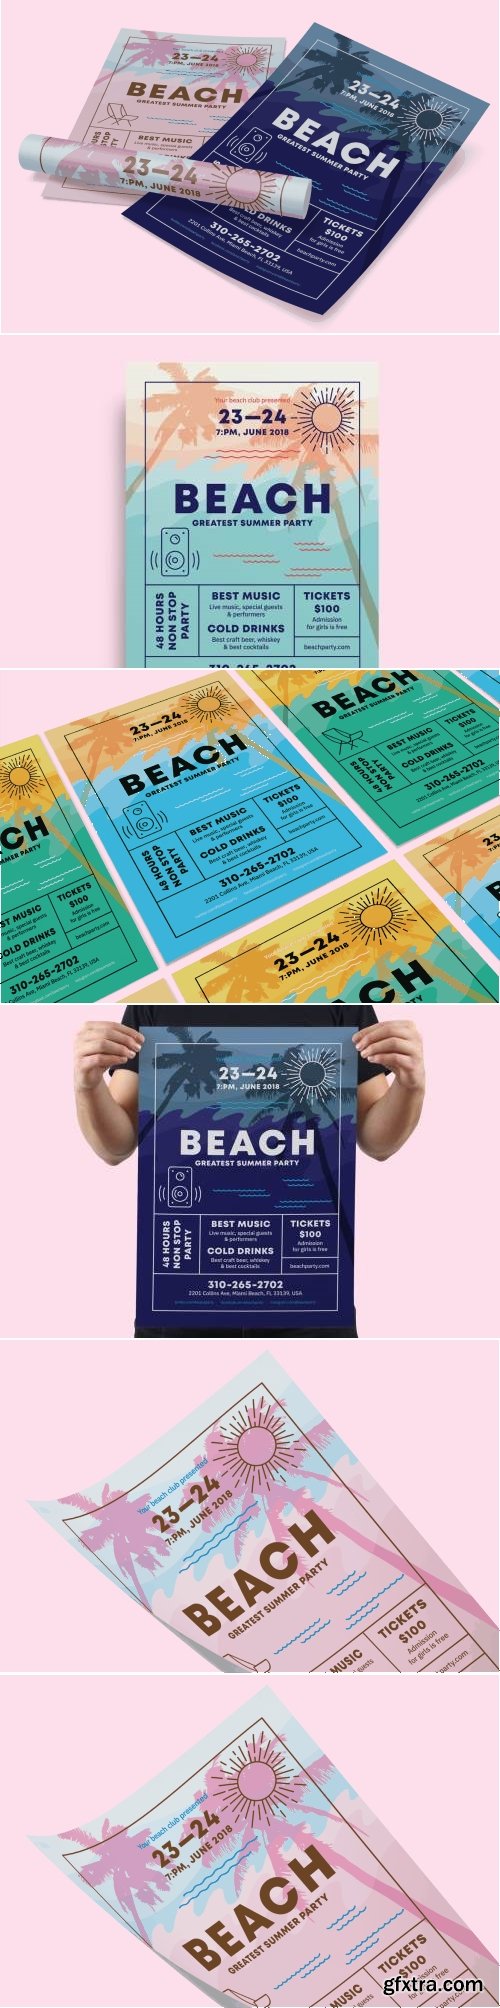 Beach Poster Template